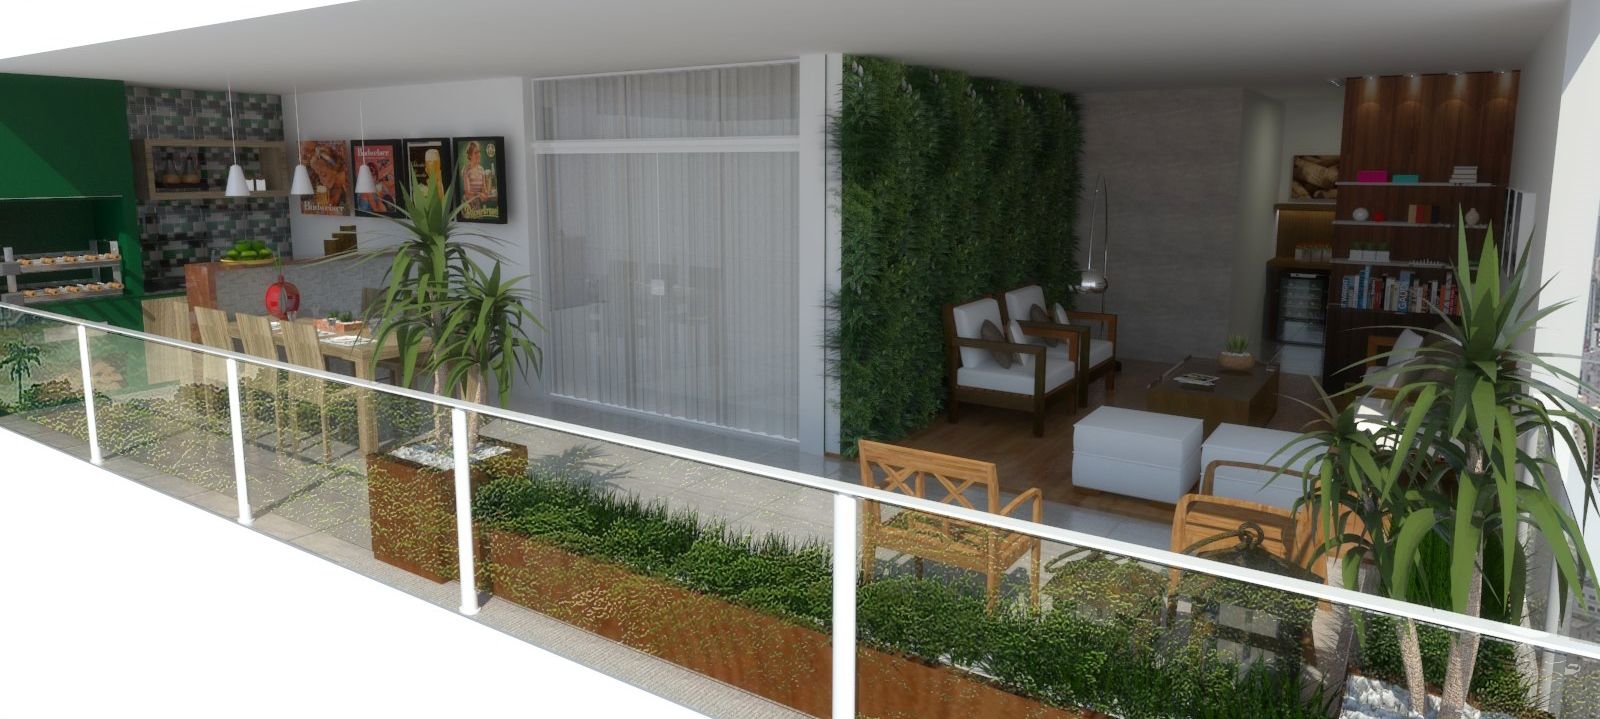 Apartamento em São Paulo, Arquidecor Projetos Arquidecor Projetos Balcones y terrazas modernos Accesorios y decoración